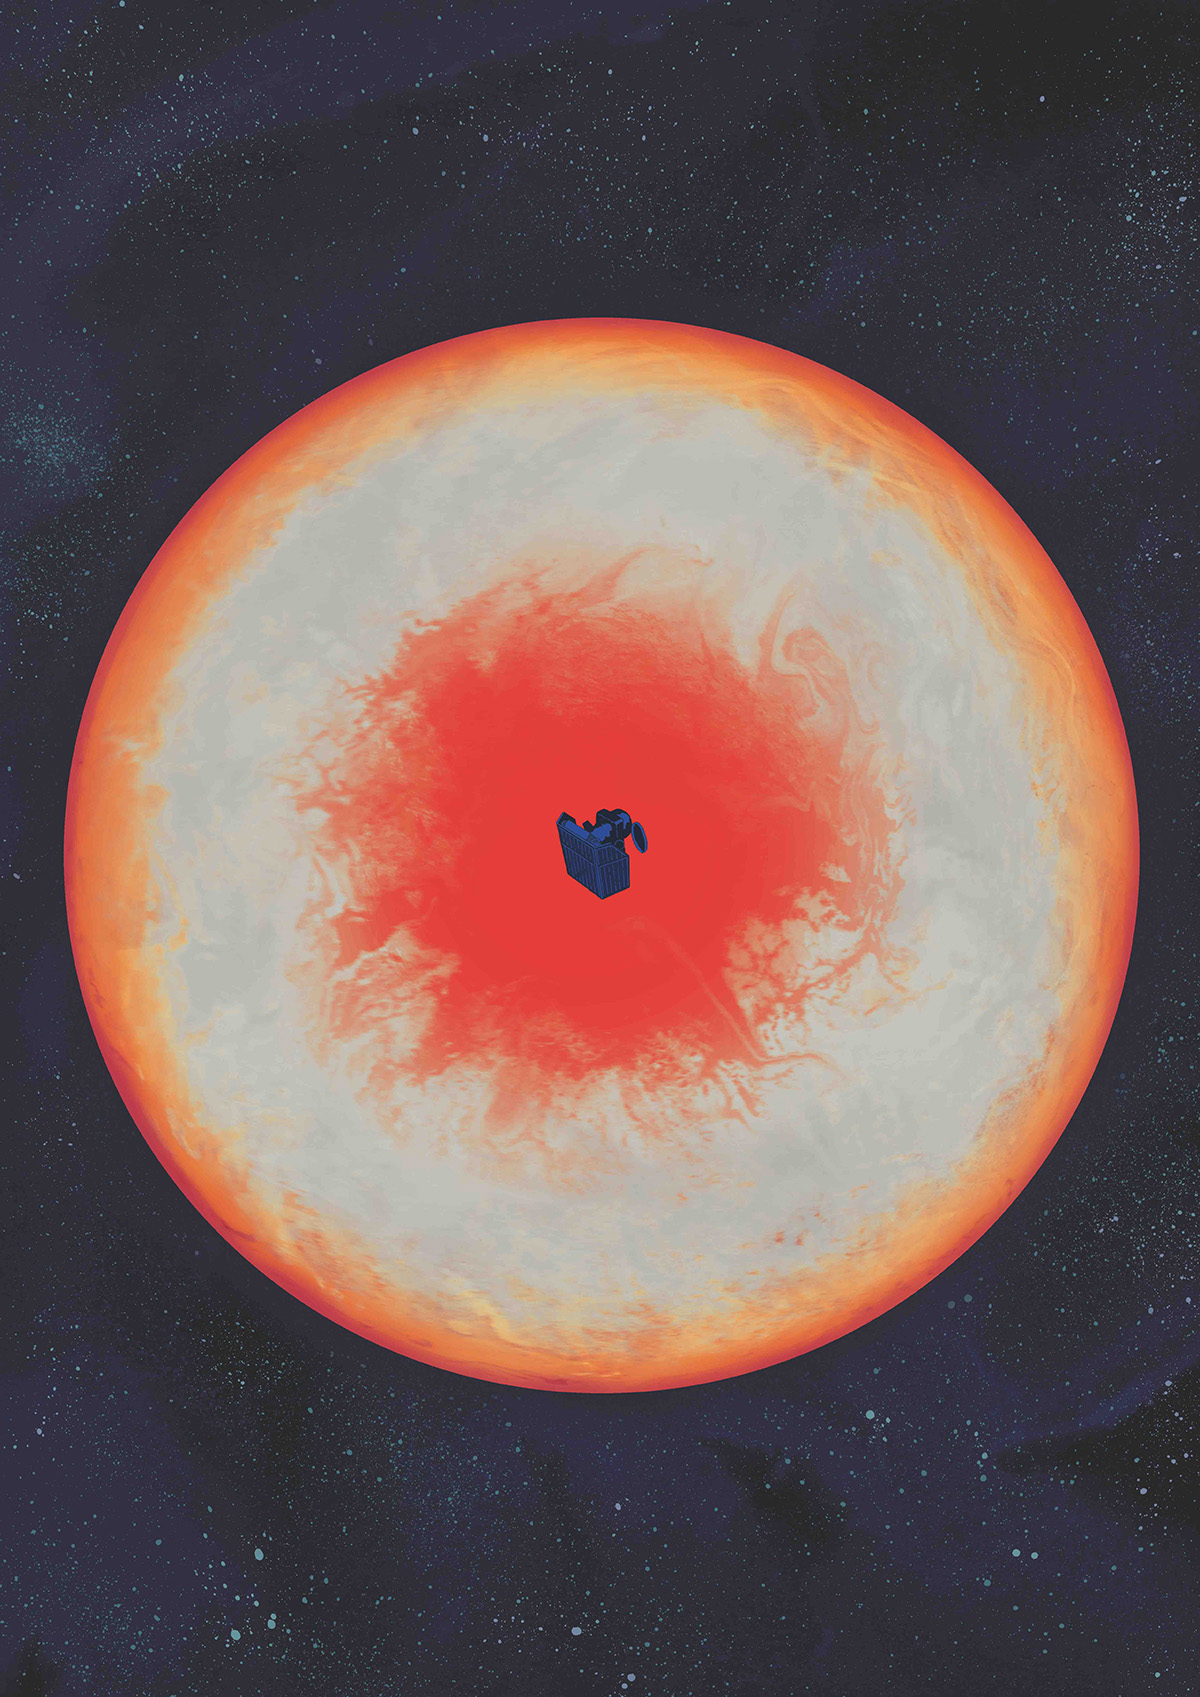 Künstlerische Darstellung von CHEOPS vor dem Exoplaneten WASP-189b, als ob sich das Weltraumteleskop zwischen der Tagesseite des Planeten und seinem blauen Stern befände. In Wirklichkeit beobachtet CHEOPS Exoplaneten von der Erdumlaufbahn aus.